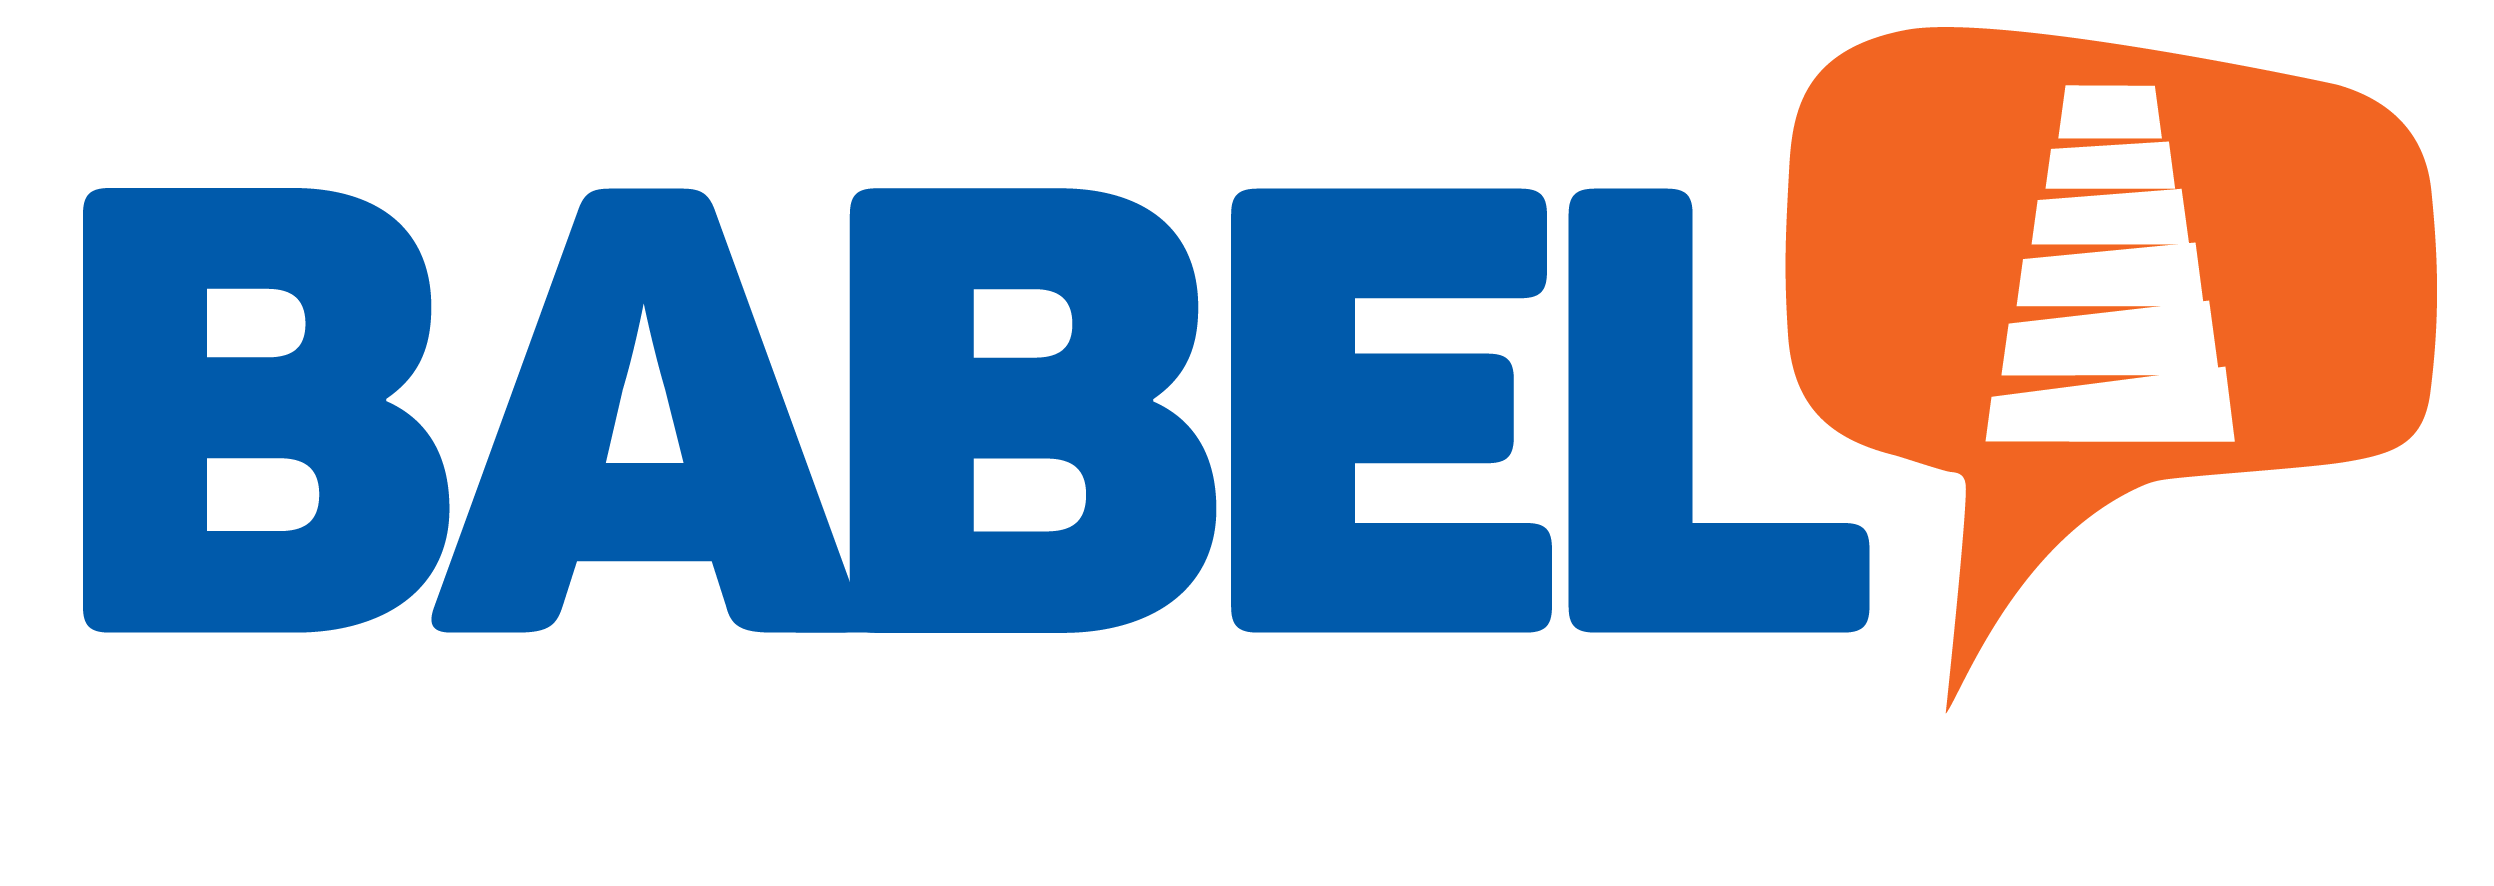 17-03 Babel - Trabajo Logo -6-01